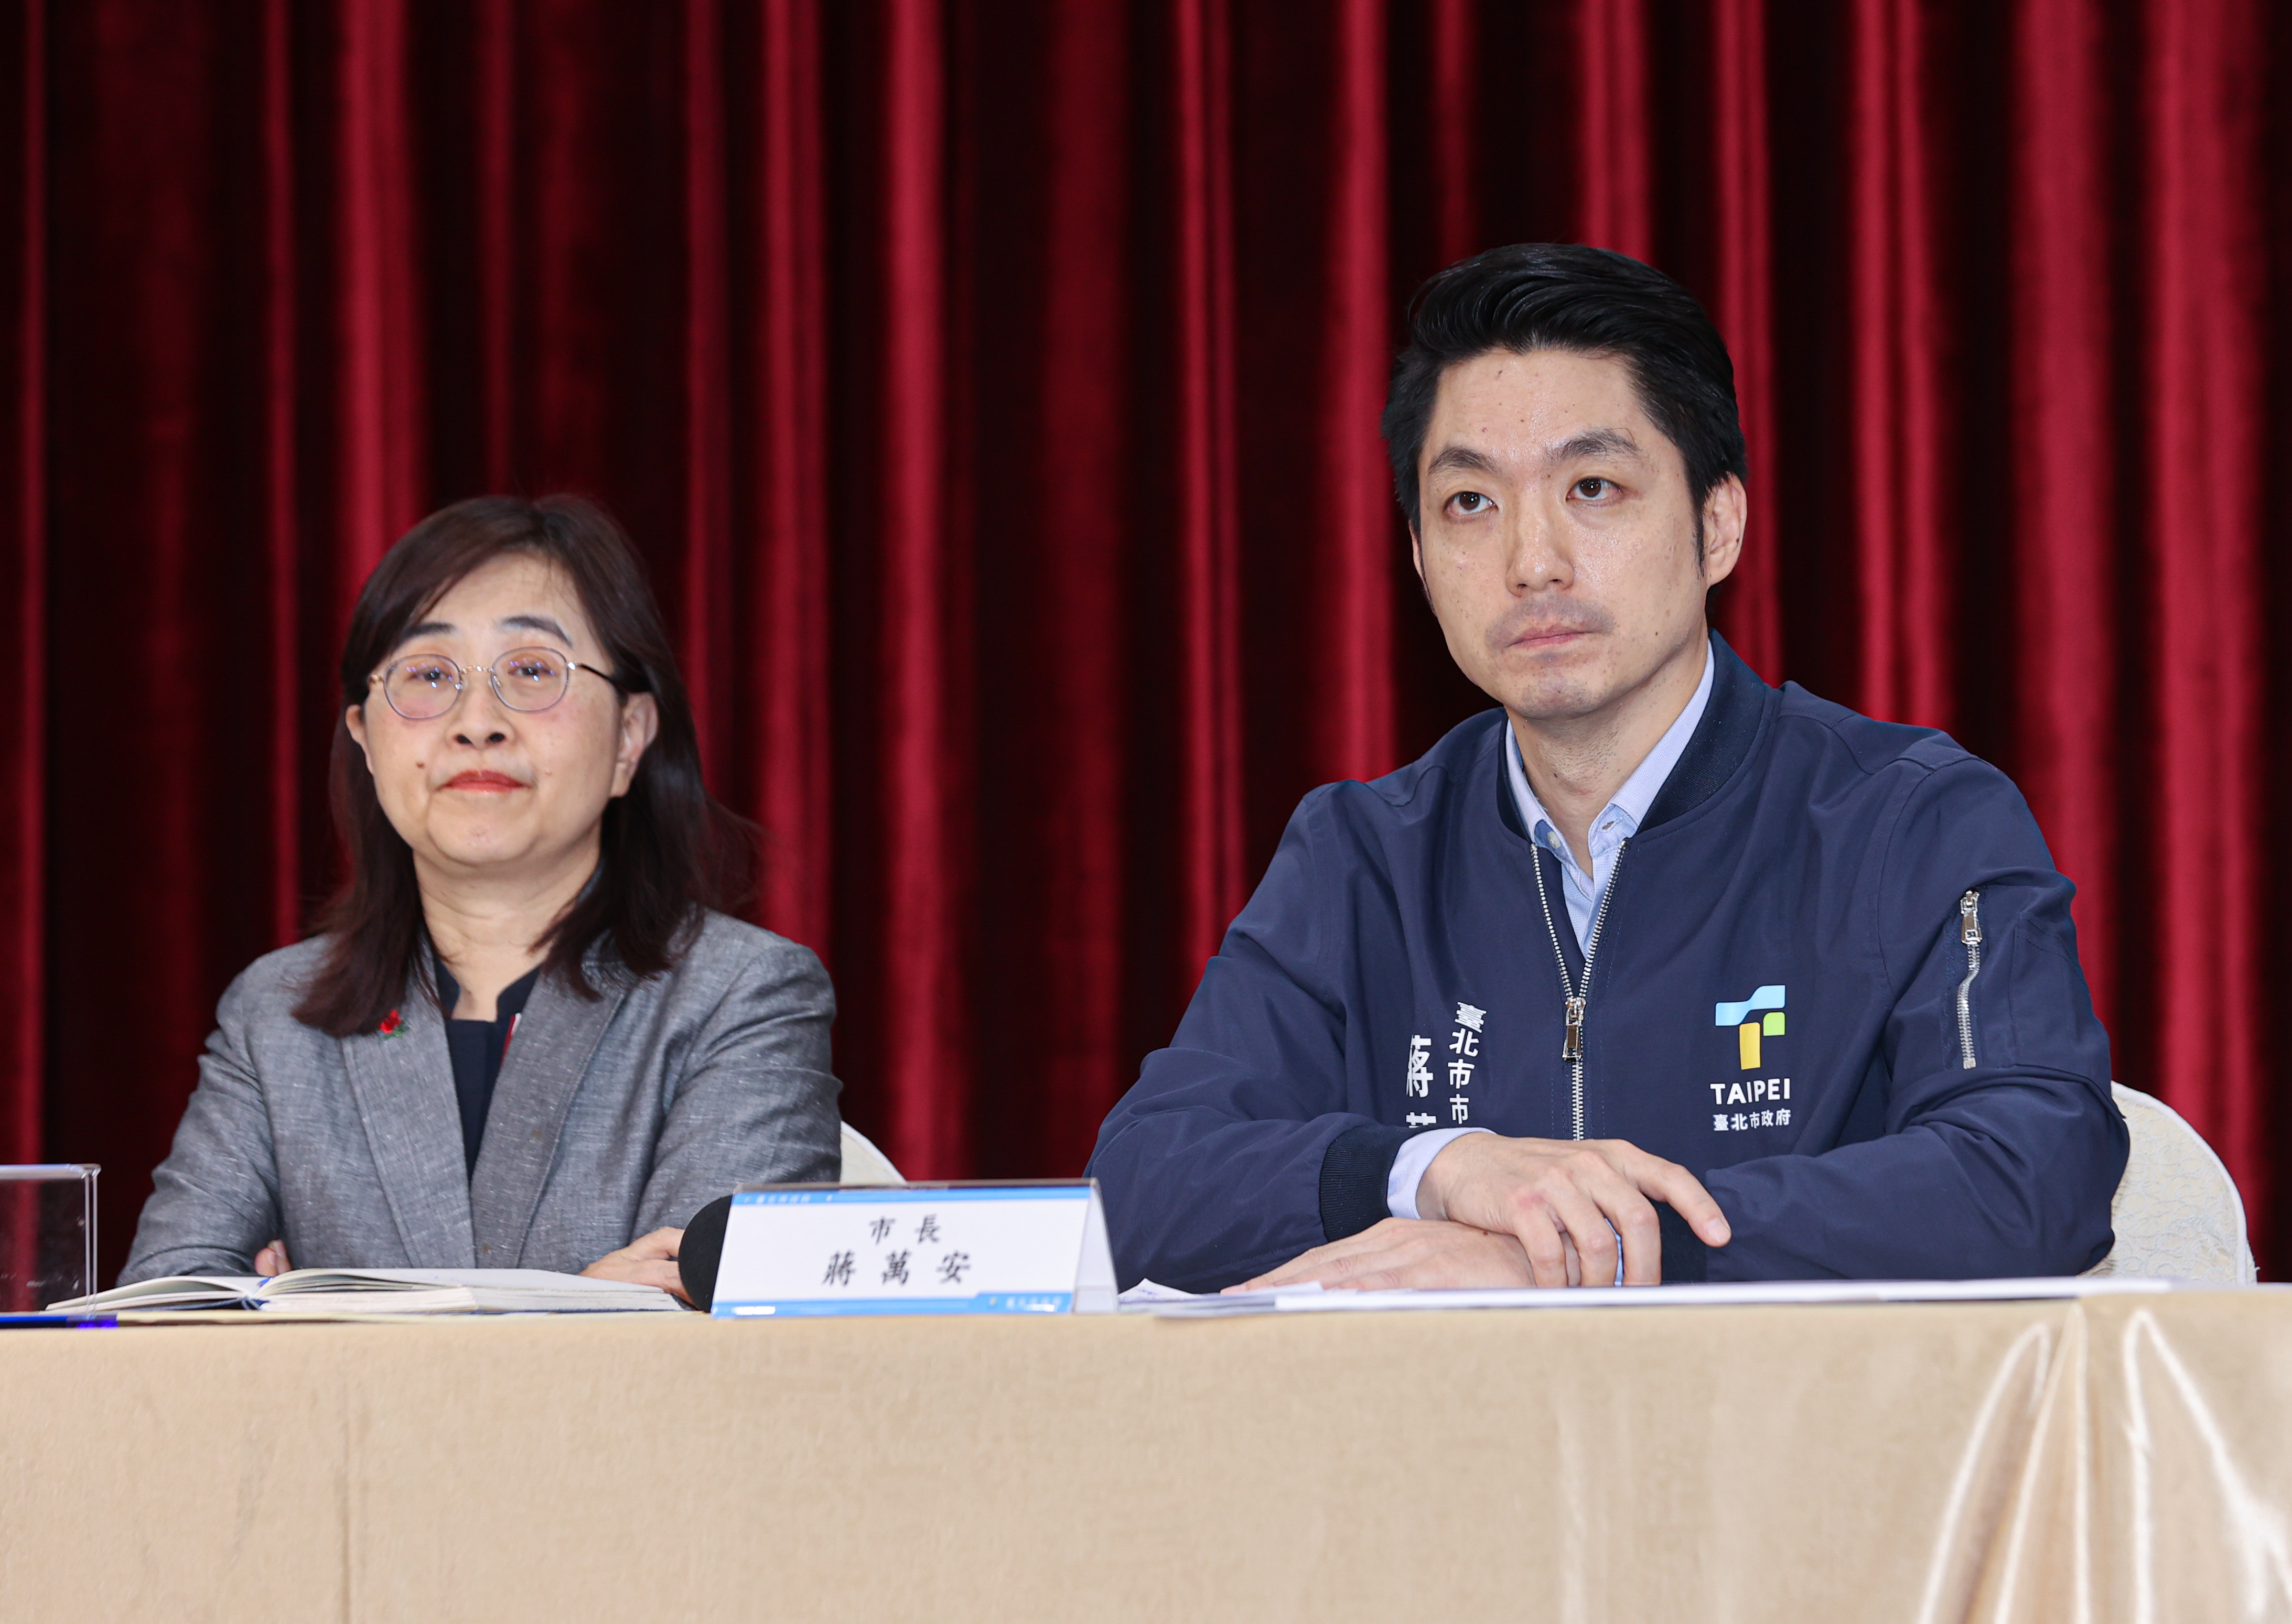 台北市政府下午举行宝林食物中毒案后续进度记者会，市长蒋万安（右）主持会议，并邀请副市长林奕华（左）多位部门代表及专家出席。记者曾原信／摄影